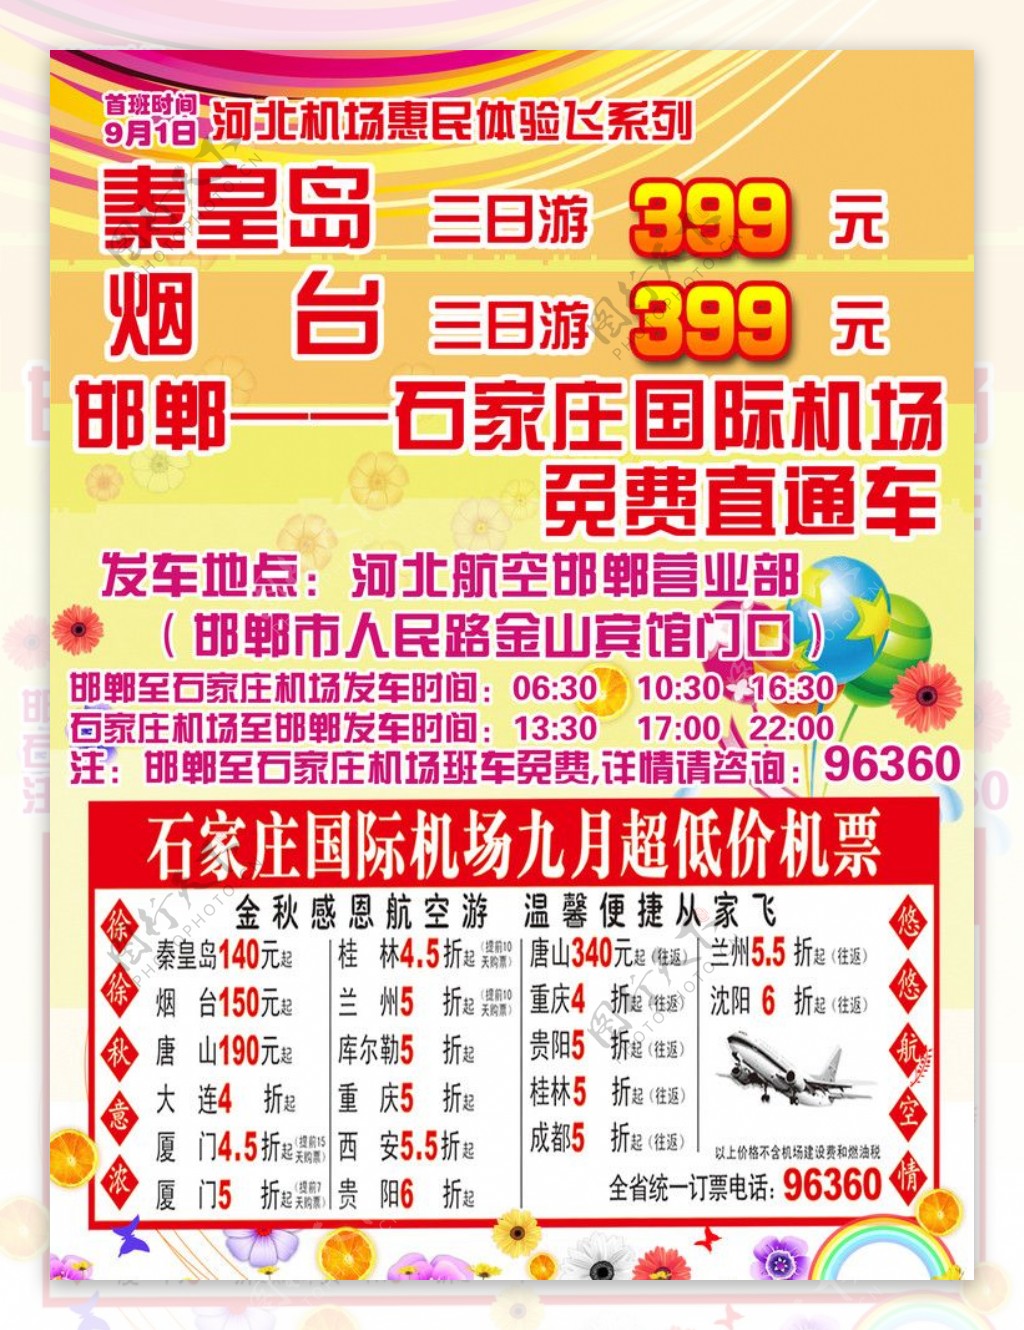 石家庄国际机场飞机票宣传广告图片